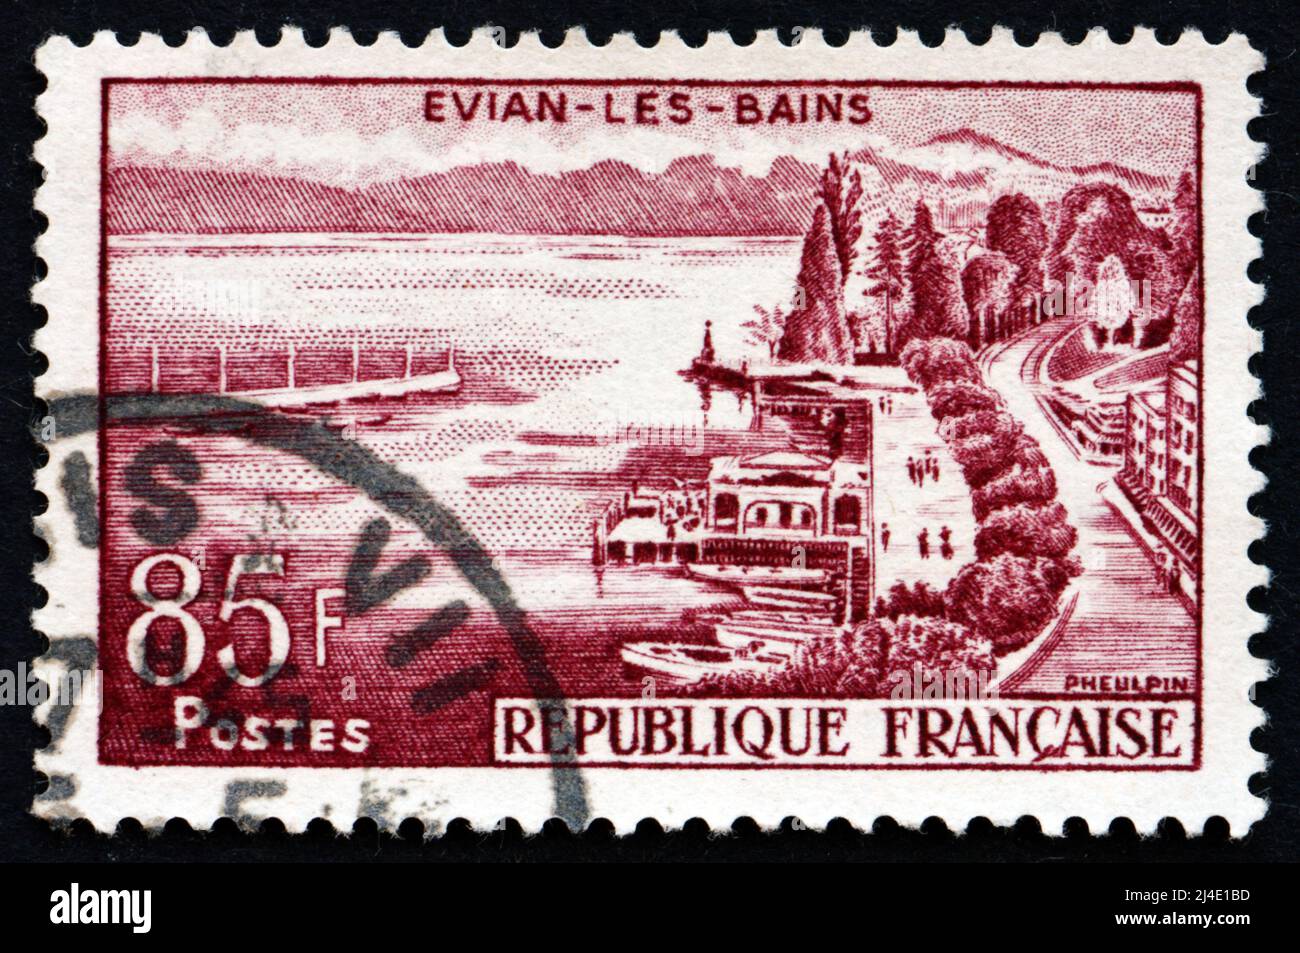 FRANCE - VERS 1959 : un timbre imprimé en France montre la vue d'Evian-les-bains, commune du département de haute-Savoie du Rhône-Alpes, vers 195 Banque D'Images